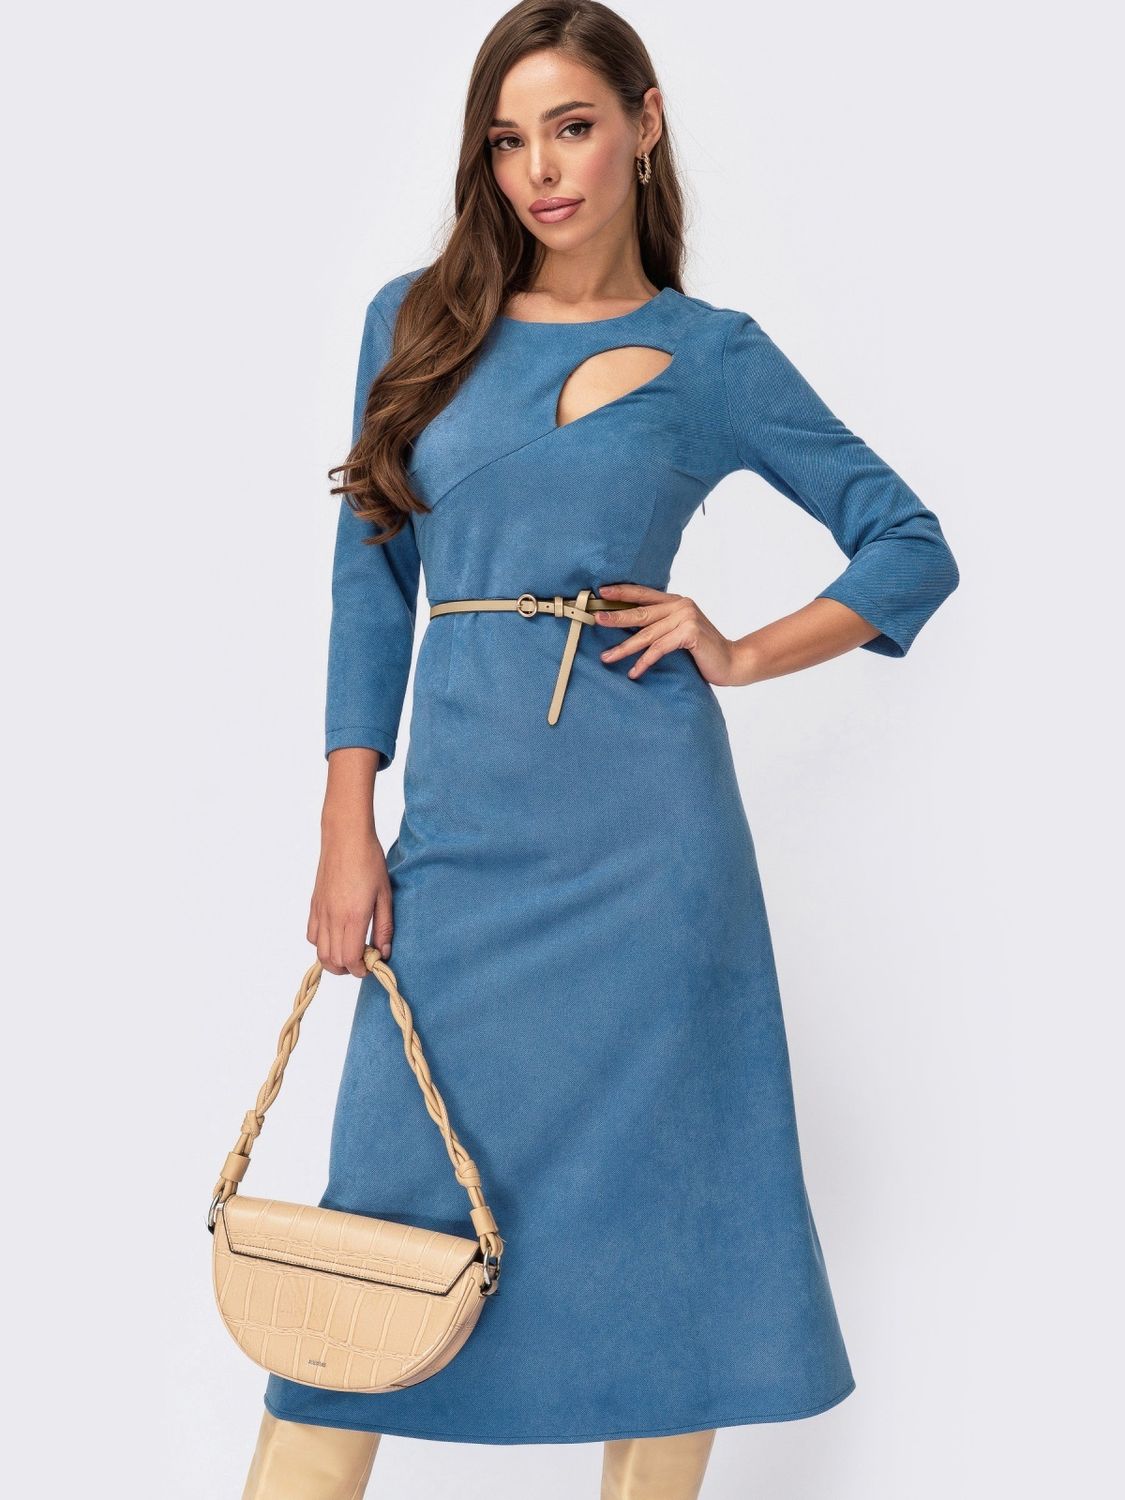 Голубое замшевое платье с юбкой солнце-клеш - фото